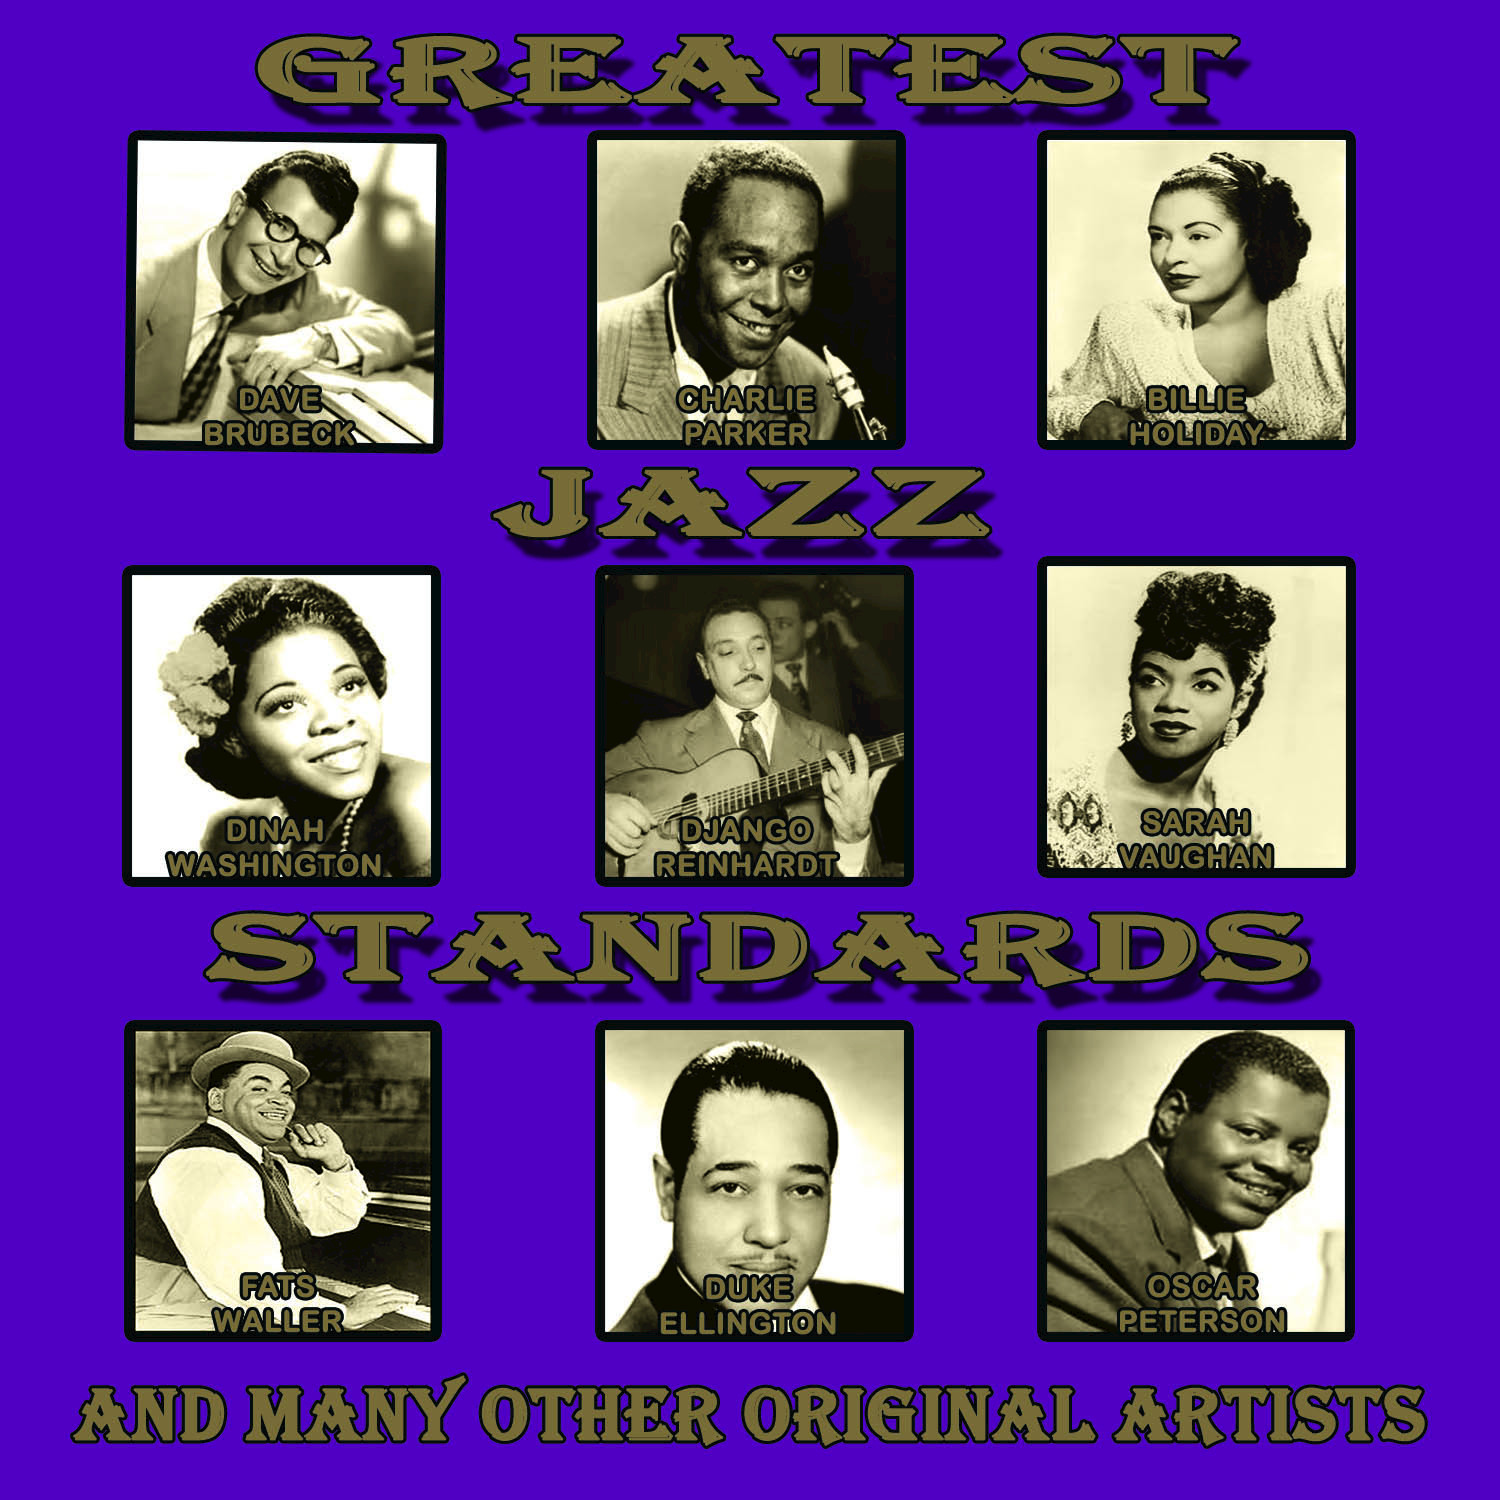 Greatest Jazz Standards